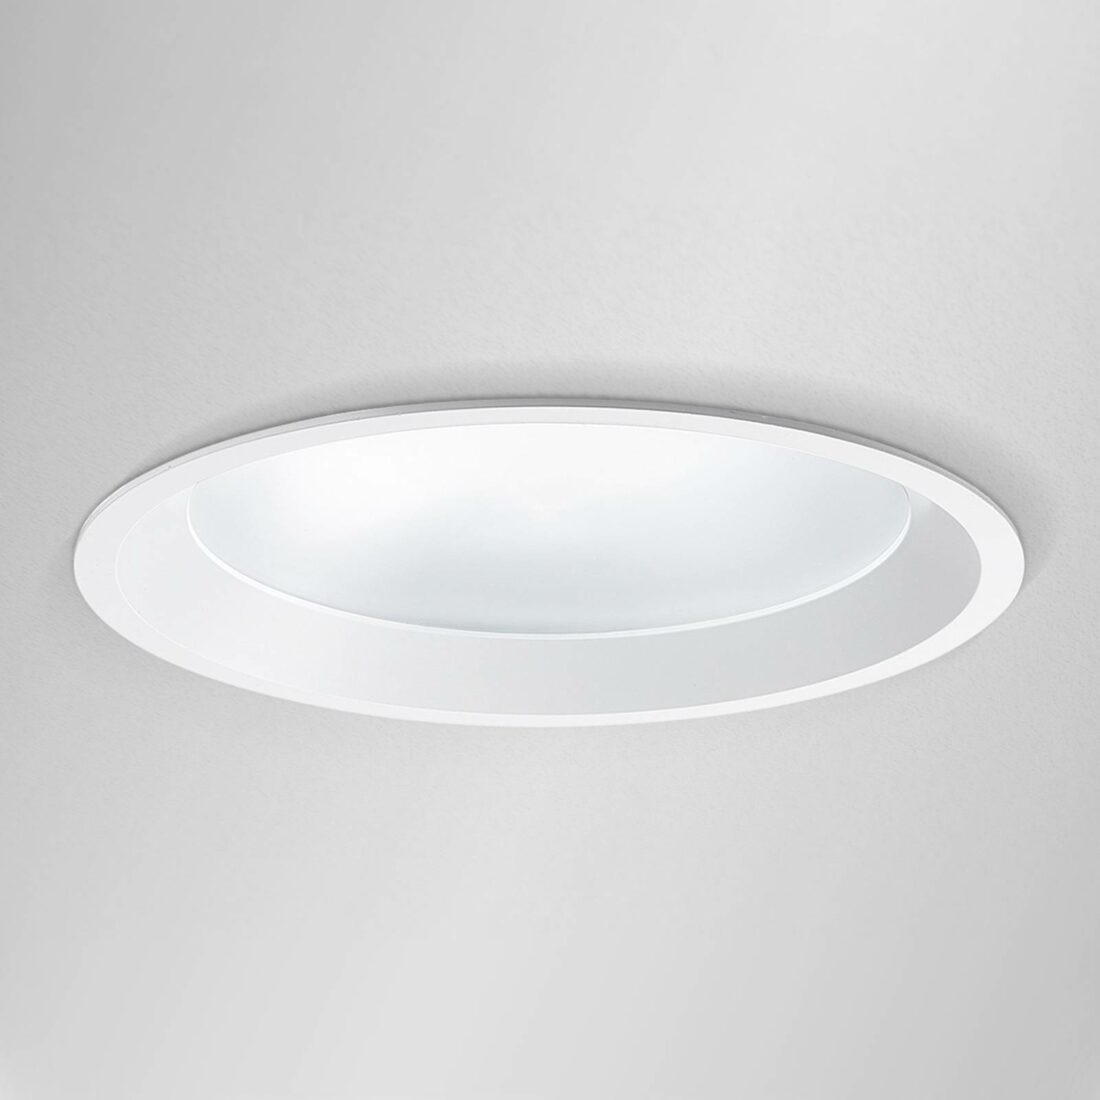 Egger Licht Průměr 19 cm - LED podhledový spot Strato 190